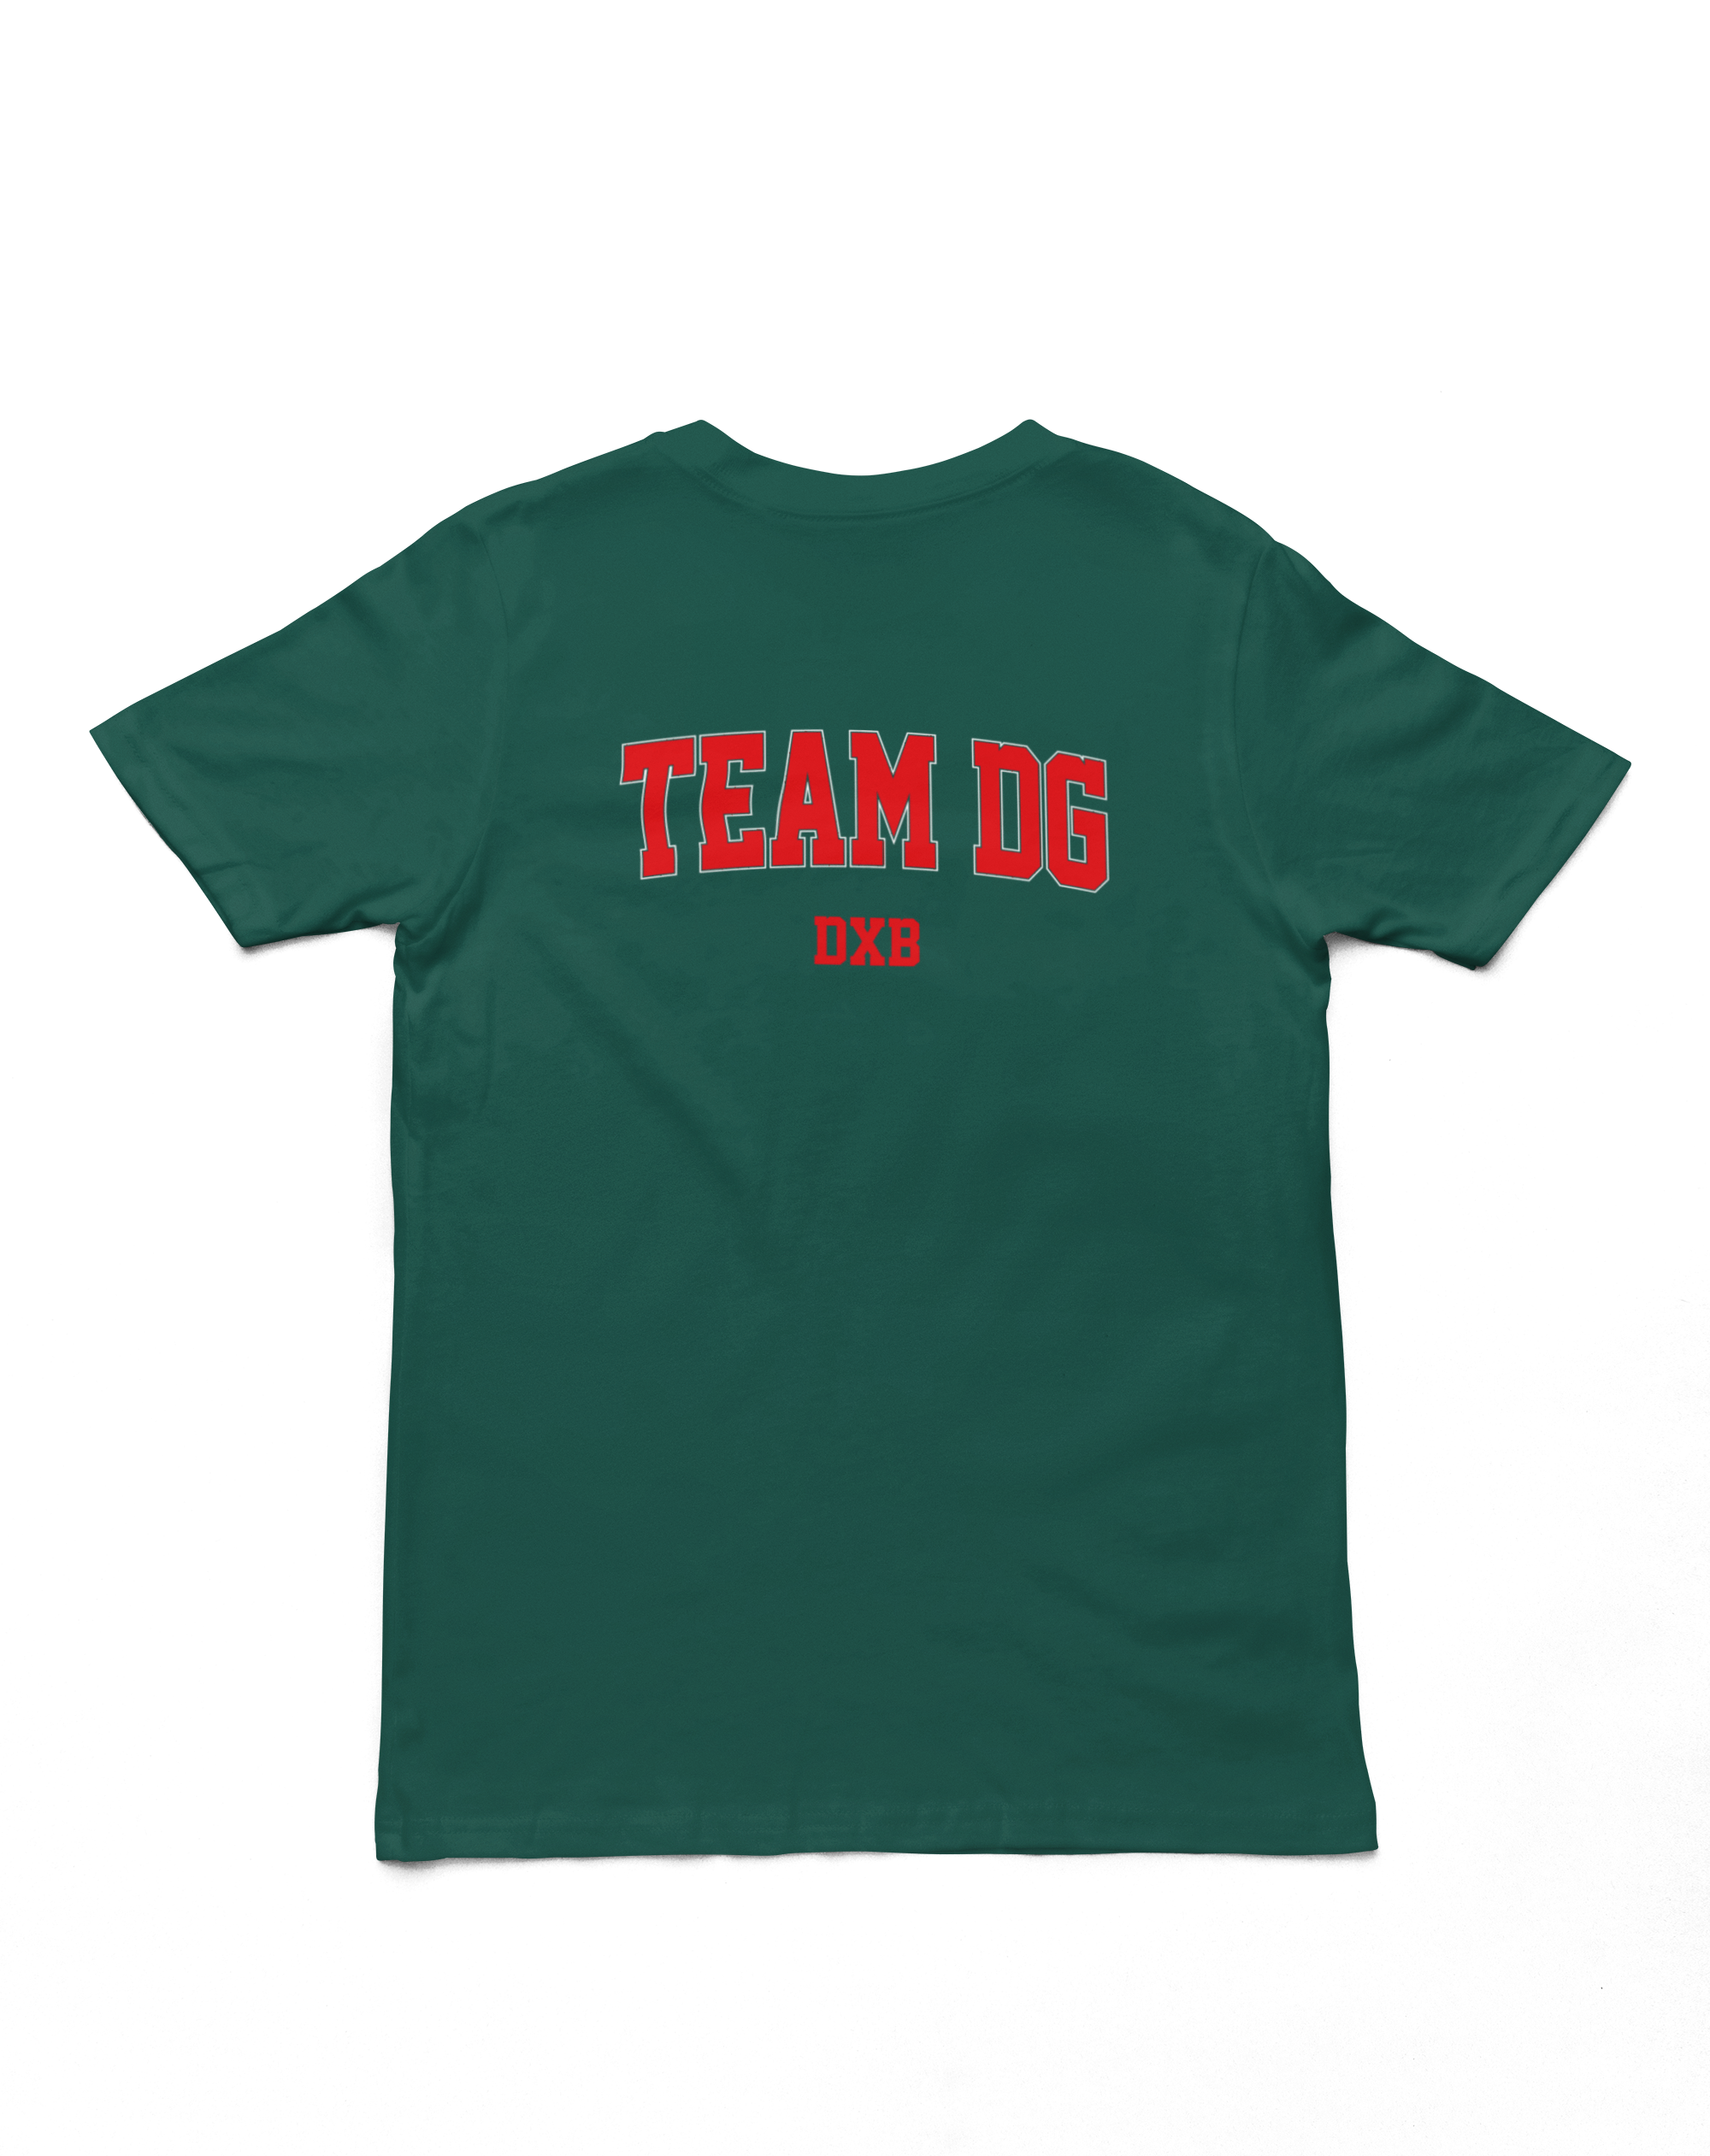 "TEAM DG DXB" - Shirt Man (Rot/Weiss)